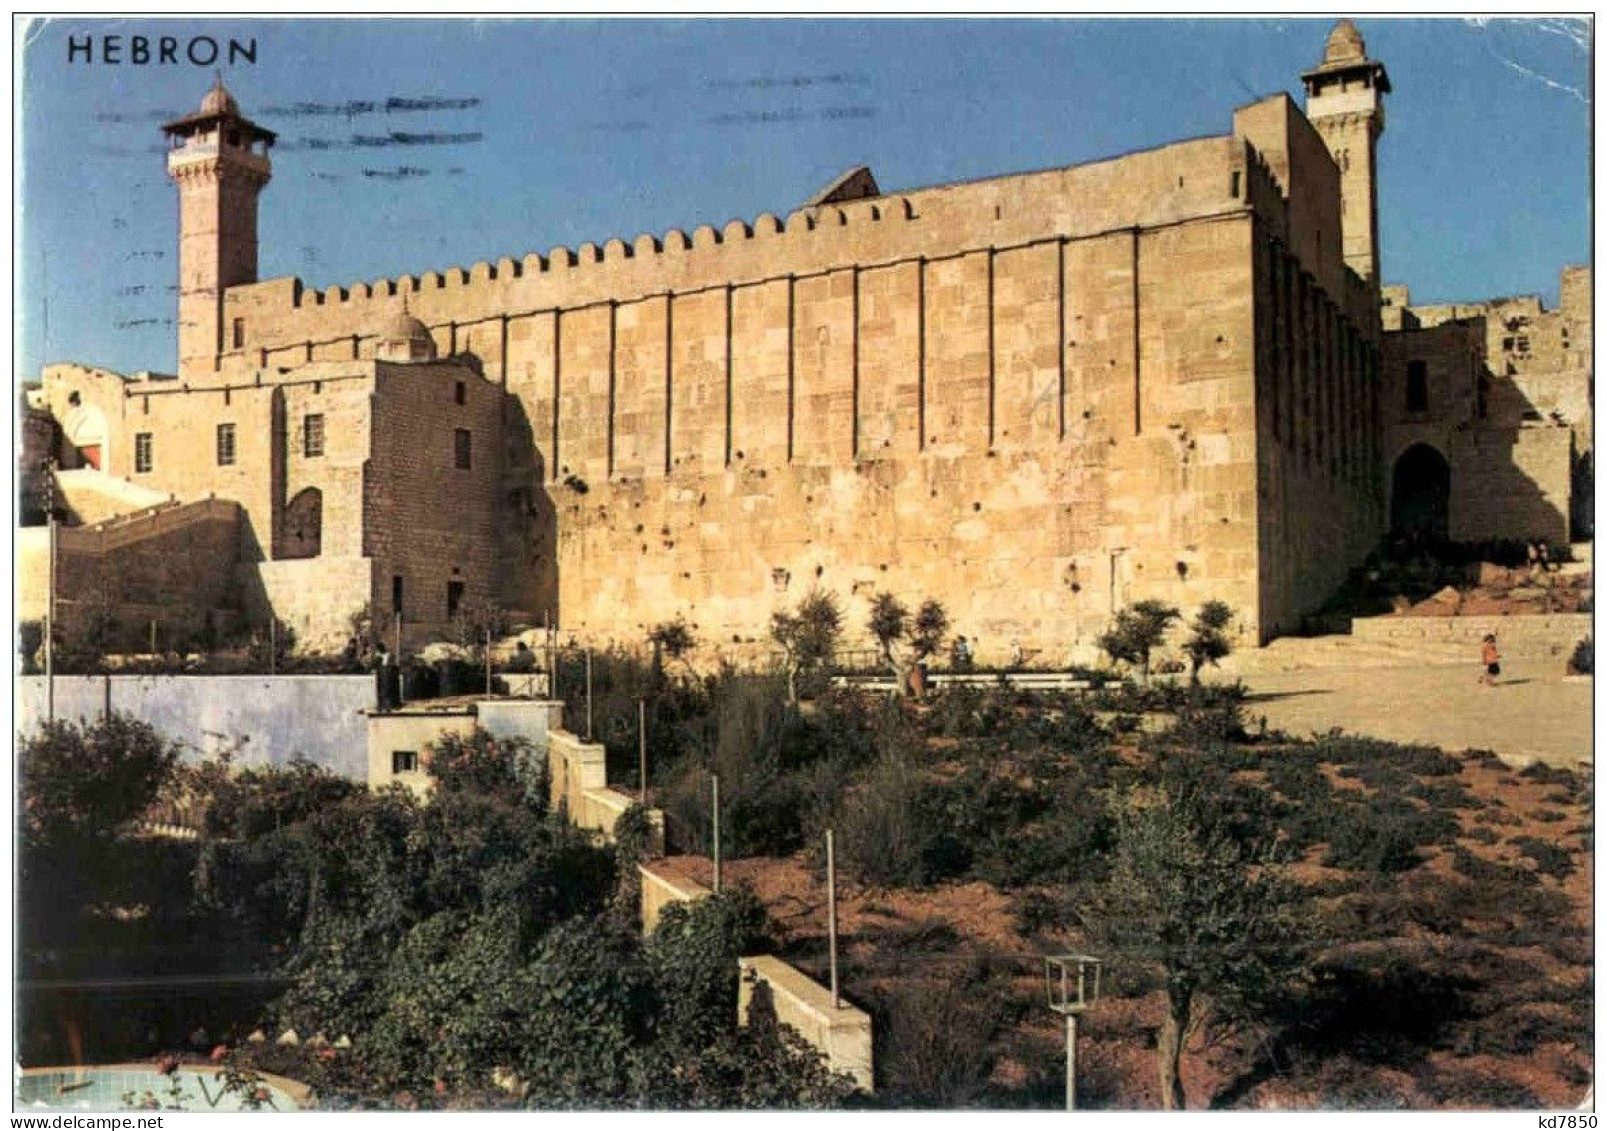 Hebron - Israel